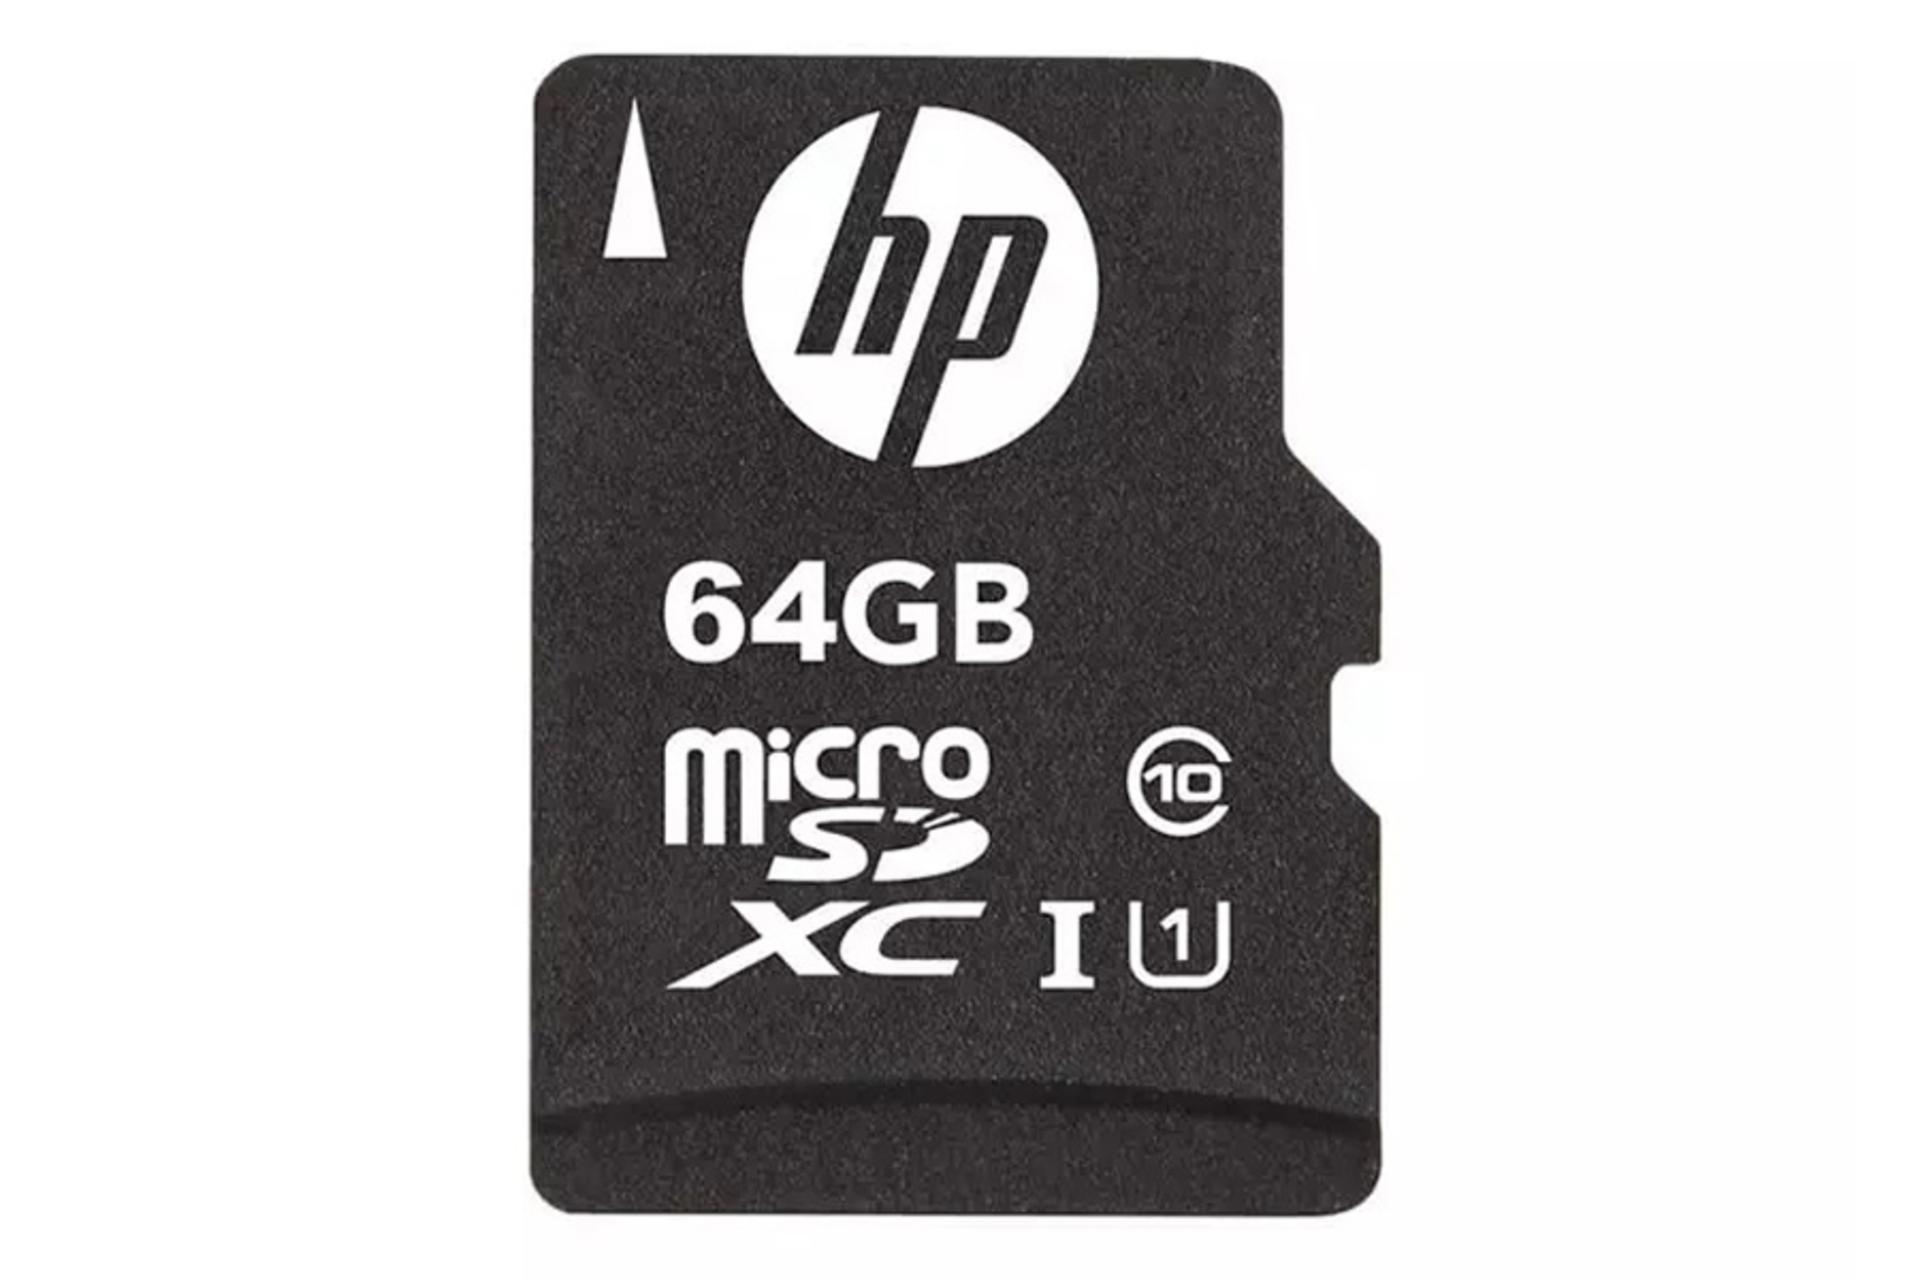 نمای روبرو کارت حافظه اچ پی microSDXC با ظرفیت 64 گیگابایت مدل MX210 کلاس 10